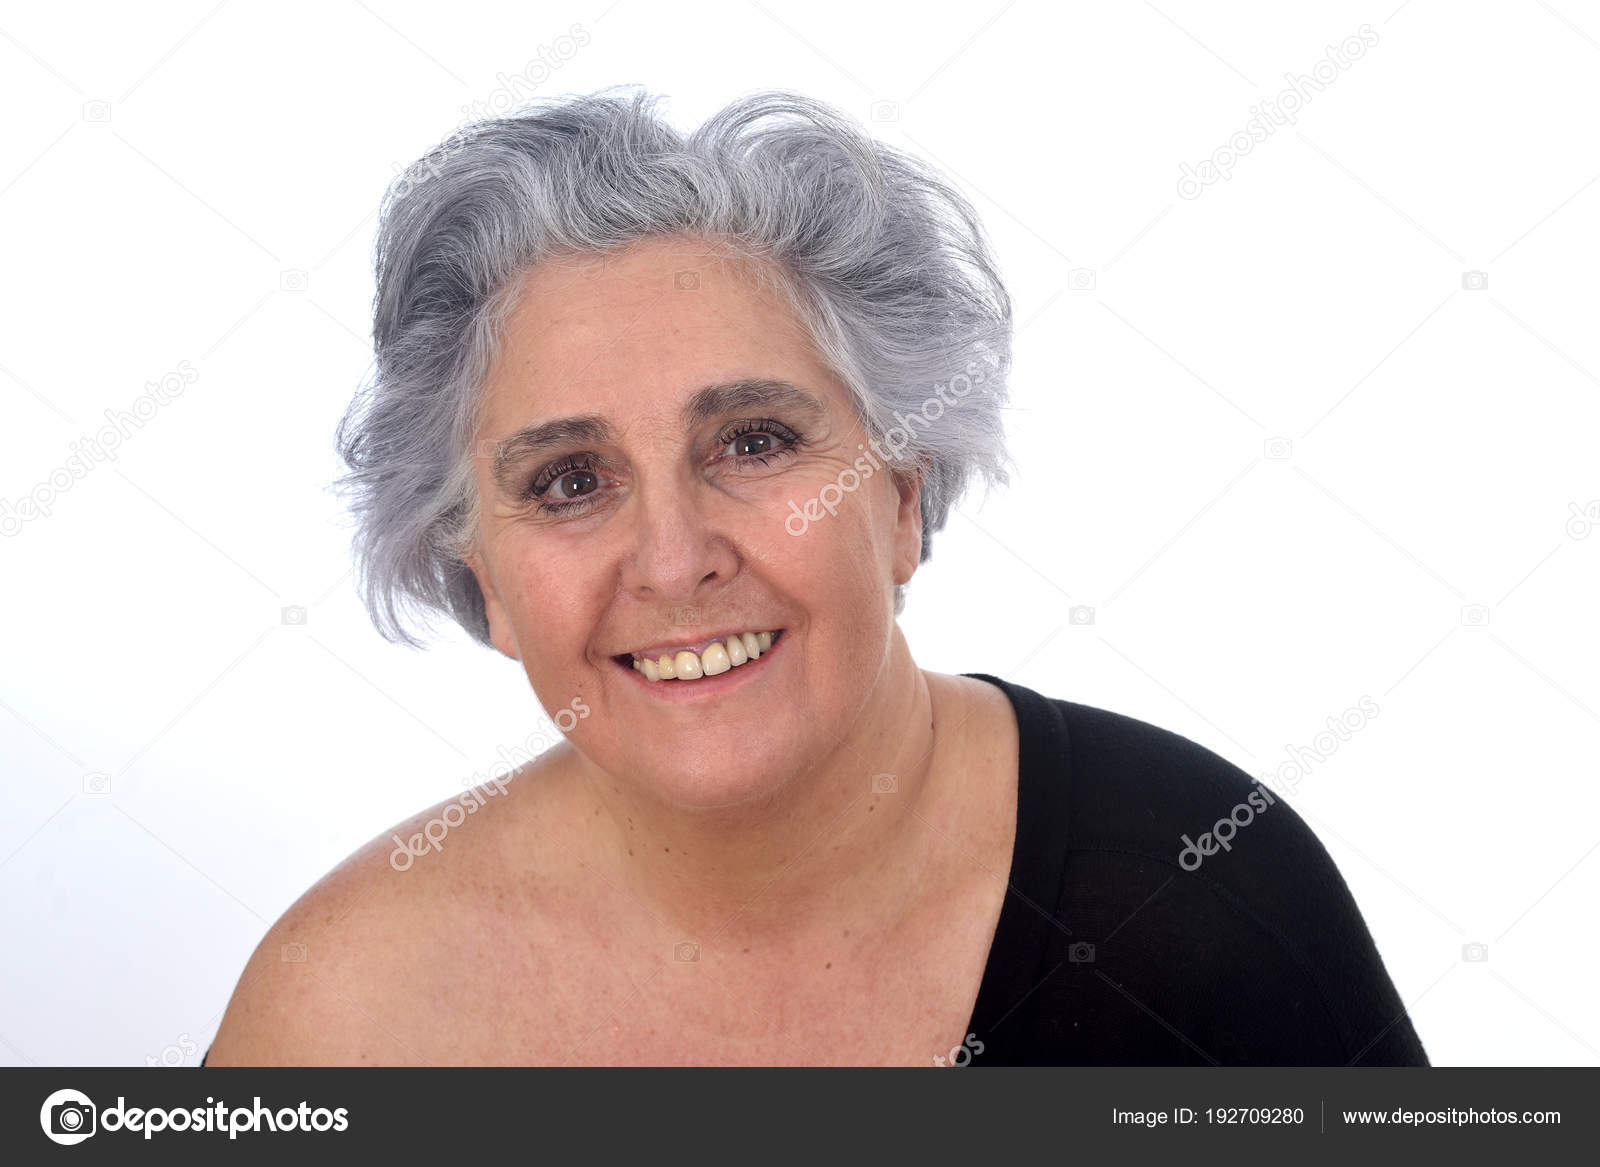 Hot older women in thongs-penty photo